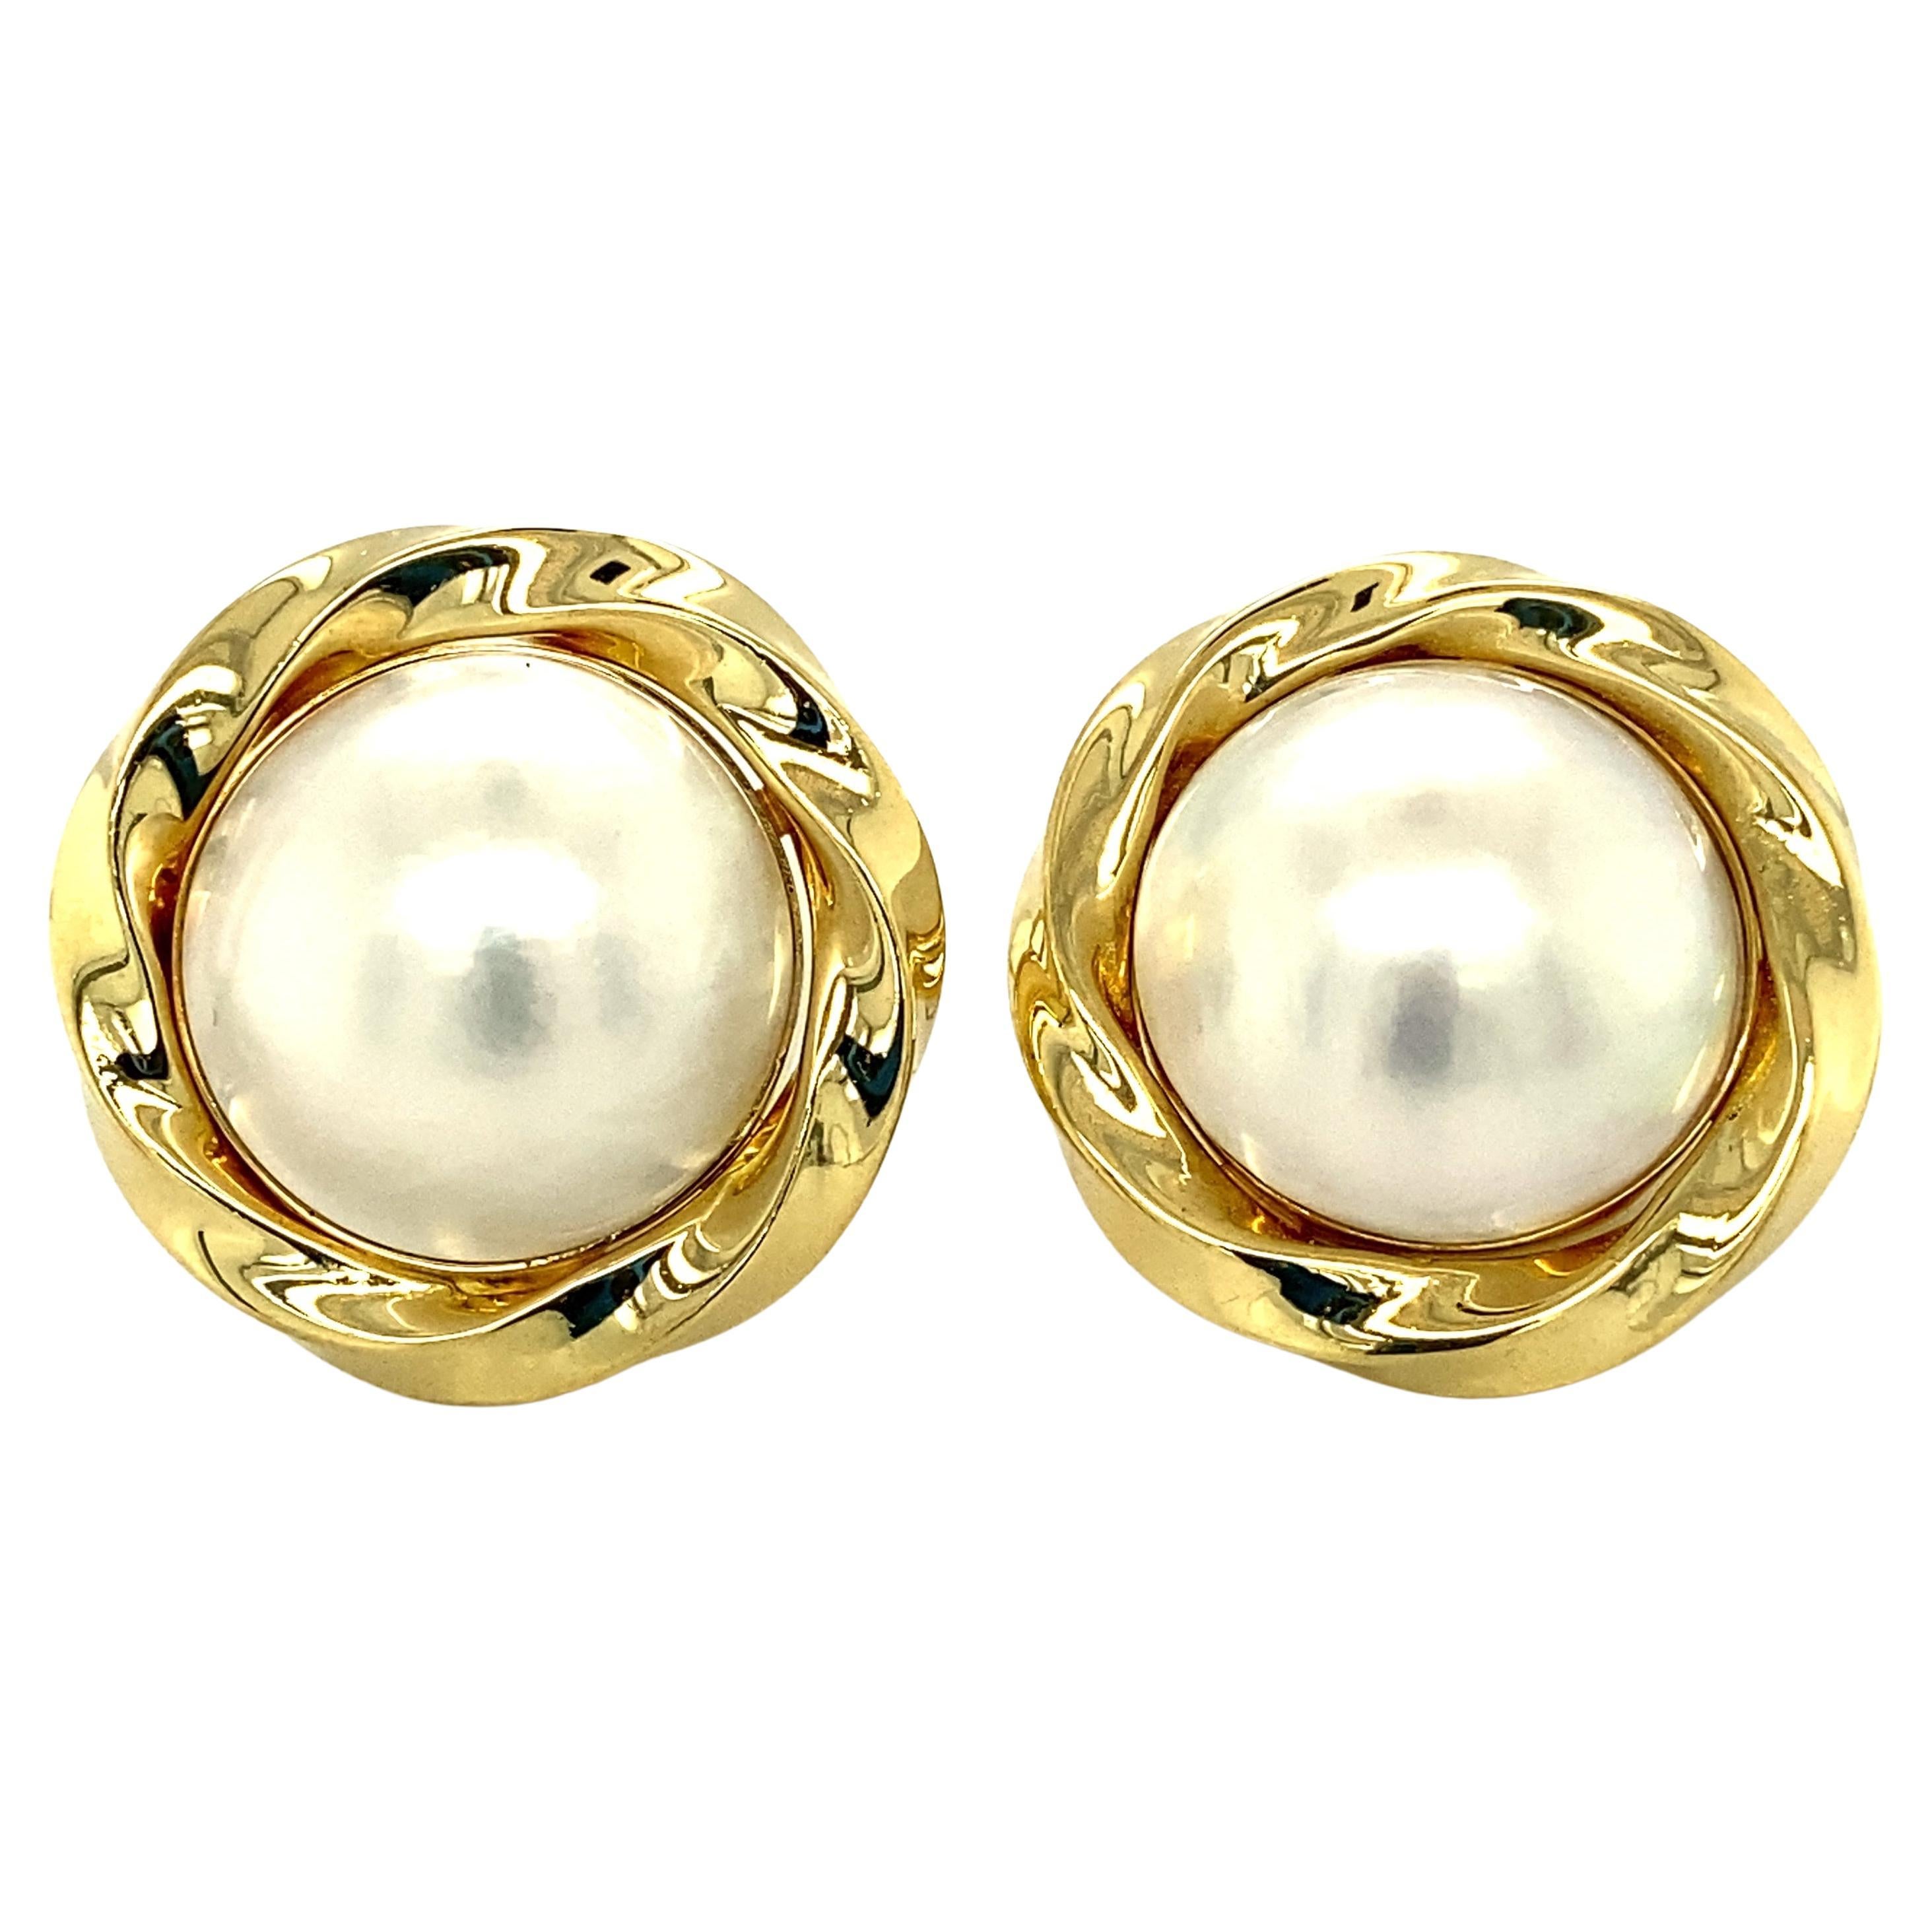 Ohrringe mit gedrehtem Rahmen aus 18 Karat Gold mit Perlen